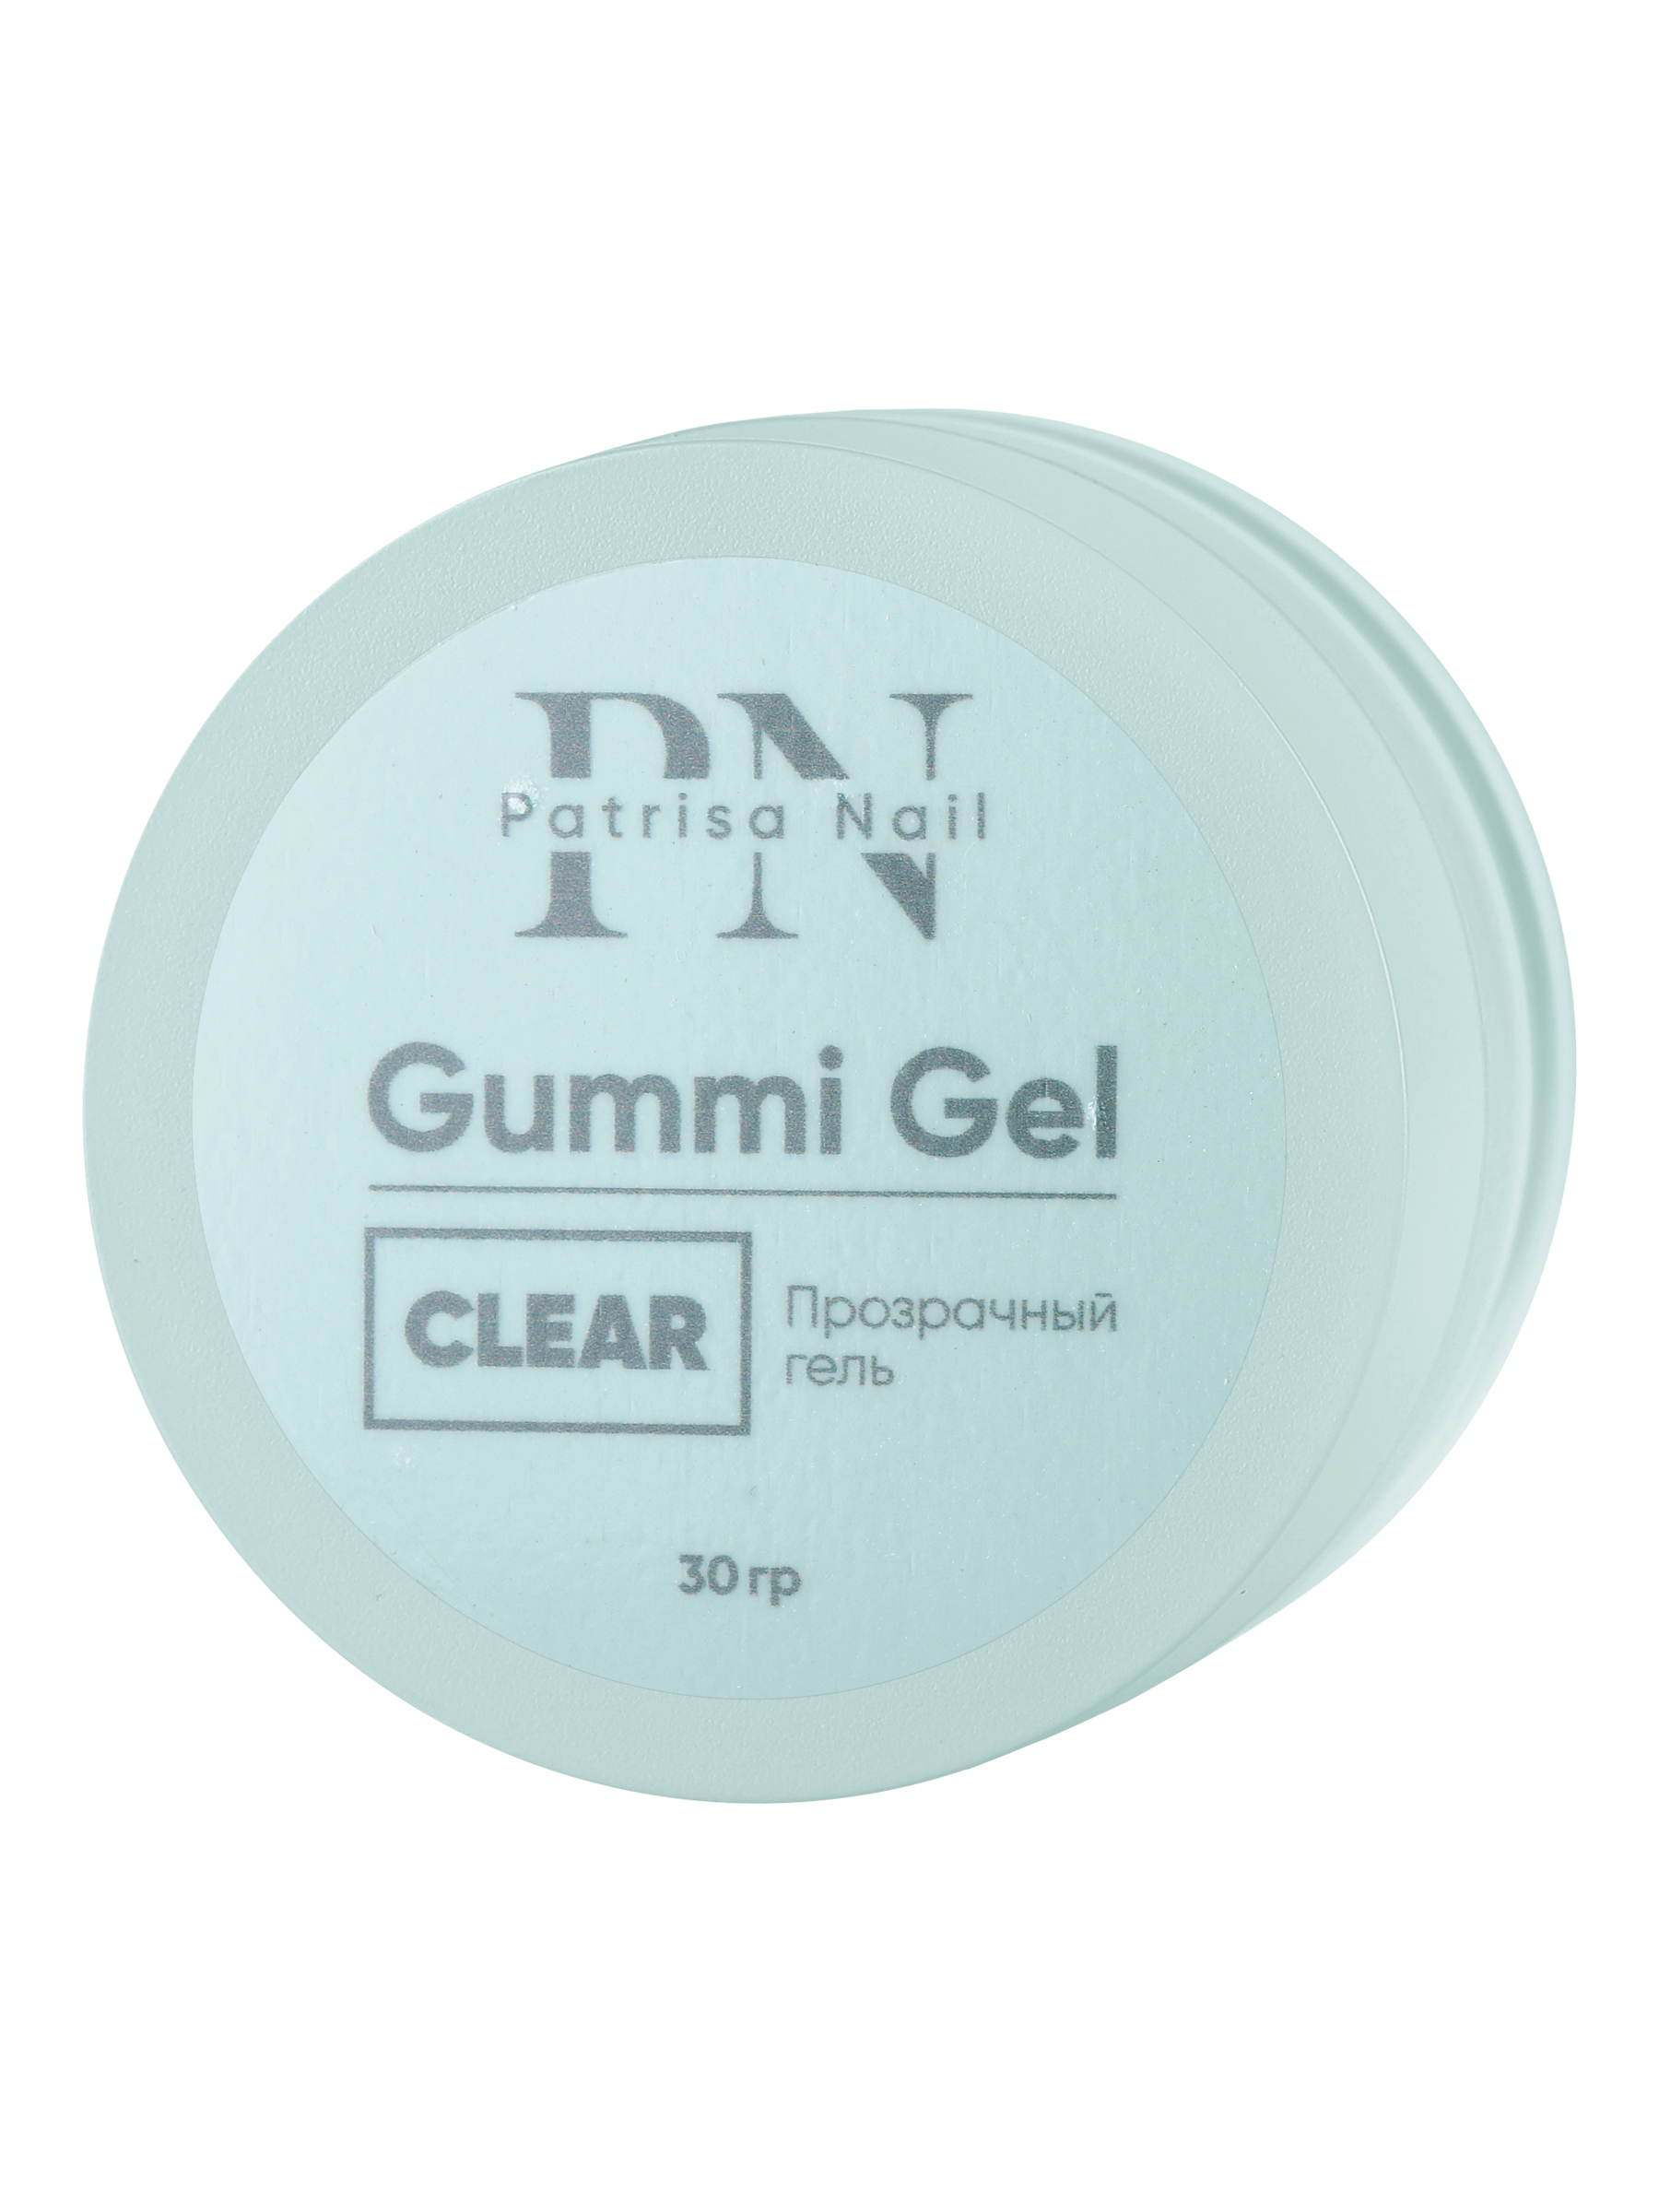 Прозрачный гель Patrisa nail Gummi Gel Clear высокой вязкости 30 г полигель cosmolac clear прозрачный 30 мл